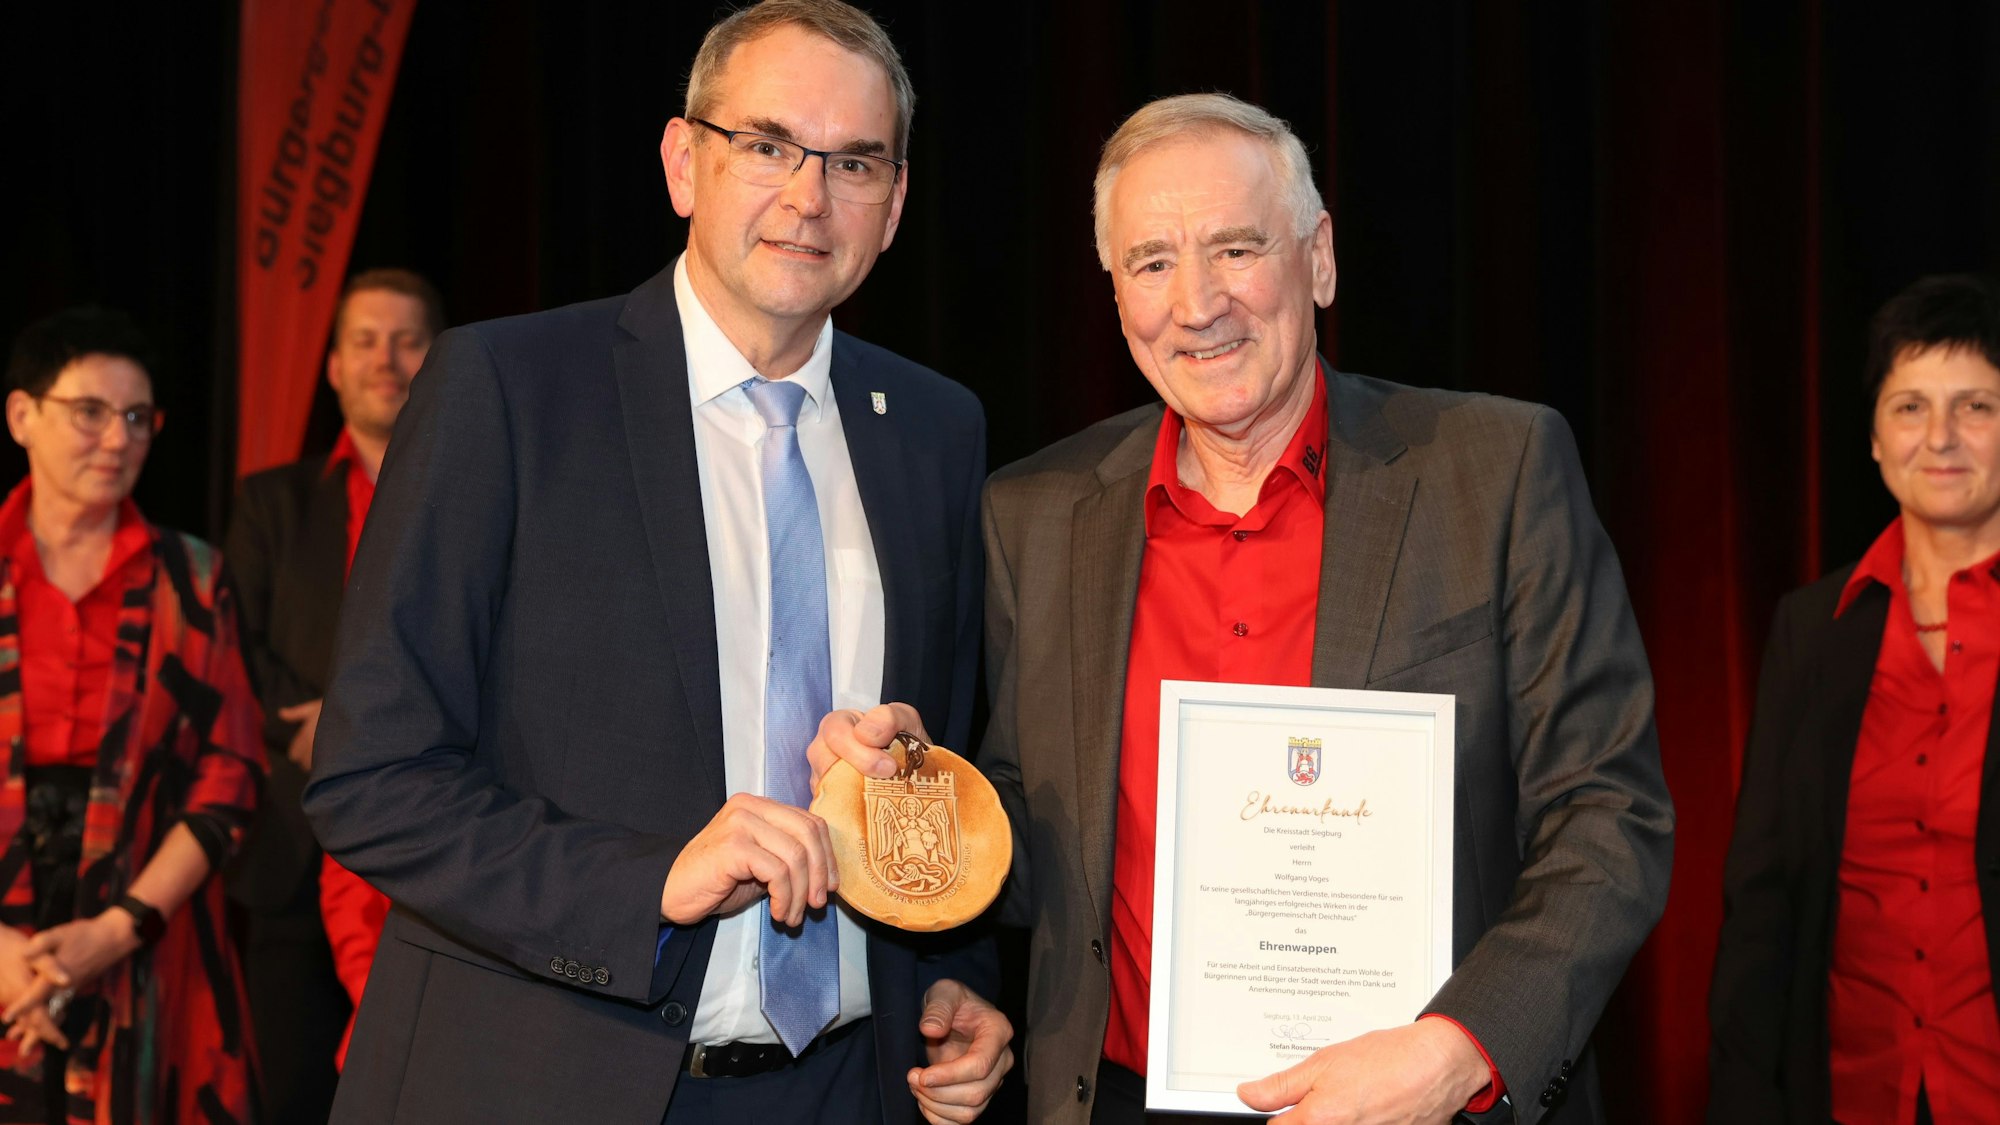 Ehrenmitglied Wolfgang Voges (rechts) erhielt von Bürgermeister Stefan Rosemann das Ehrenwappen der Stadt Siegburg.